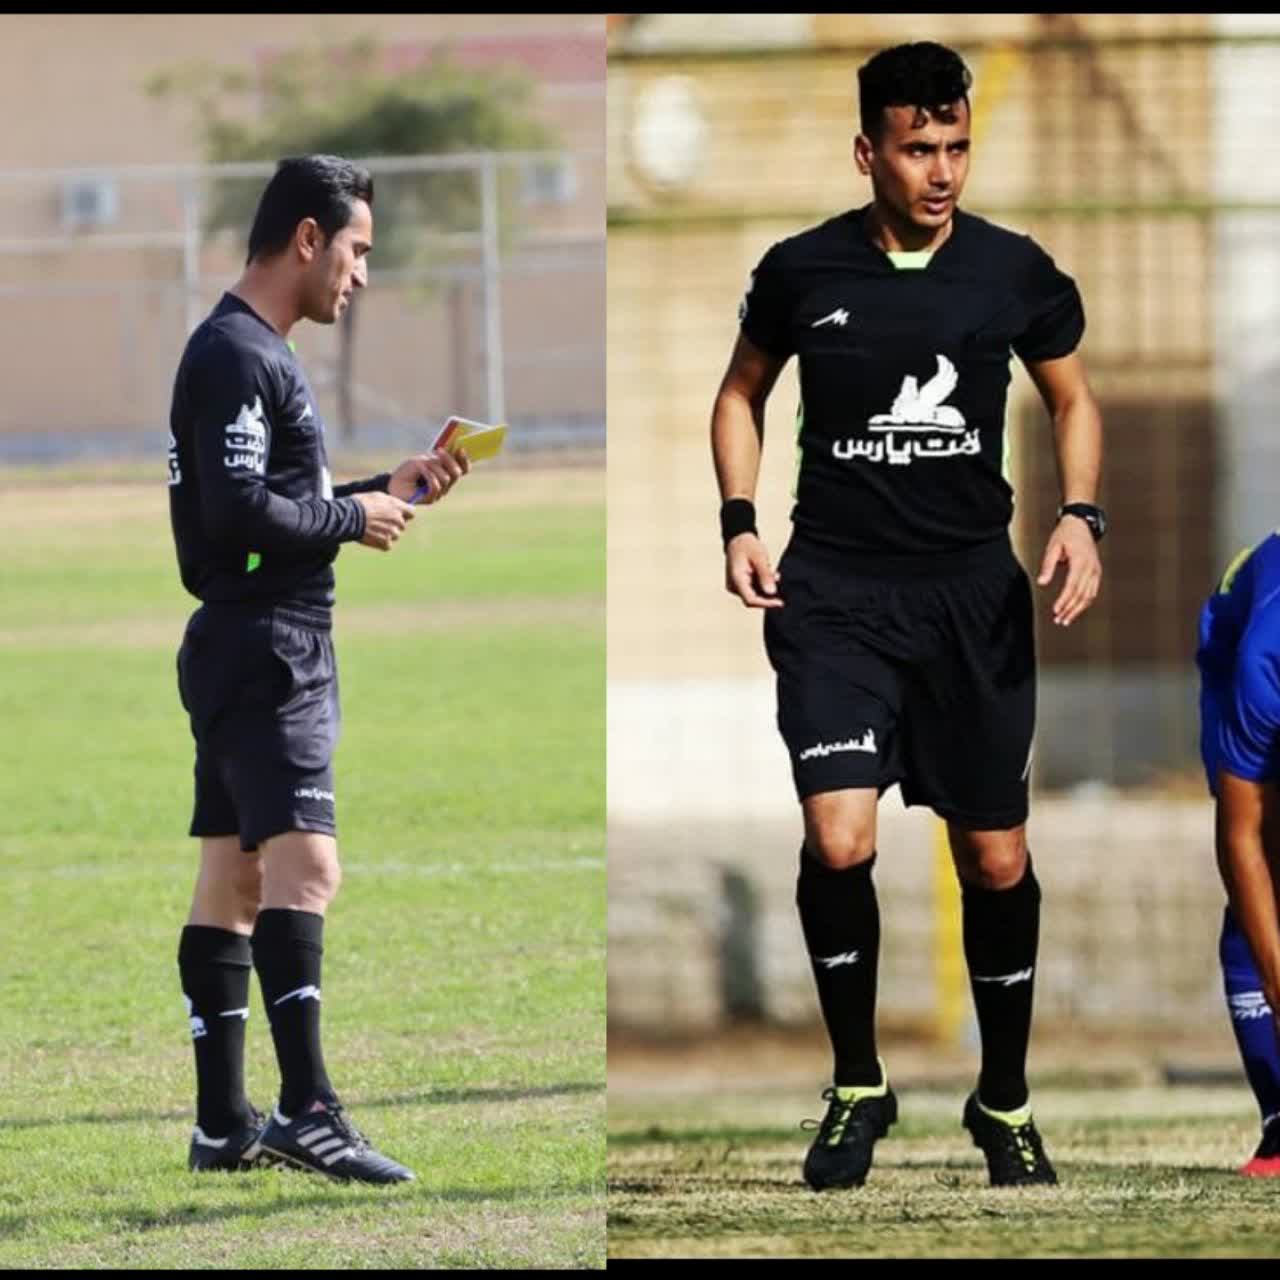 موفقیت داوران فوتبال مسجدسلیمانی در تست آمادگی جسمانی جهت قضاوت در لیگ کشور